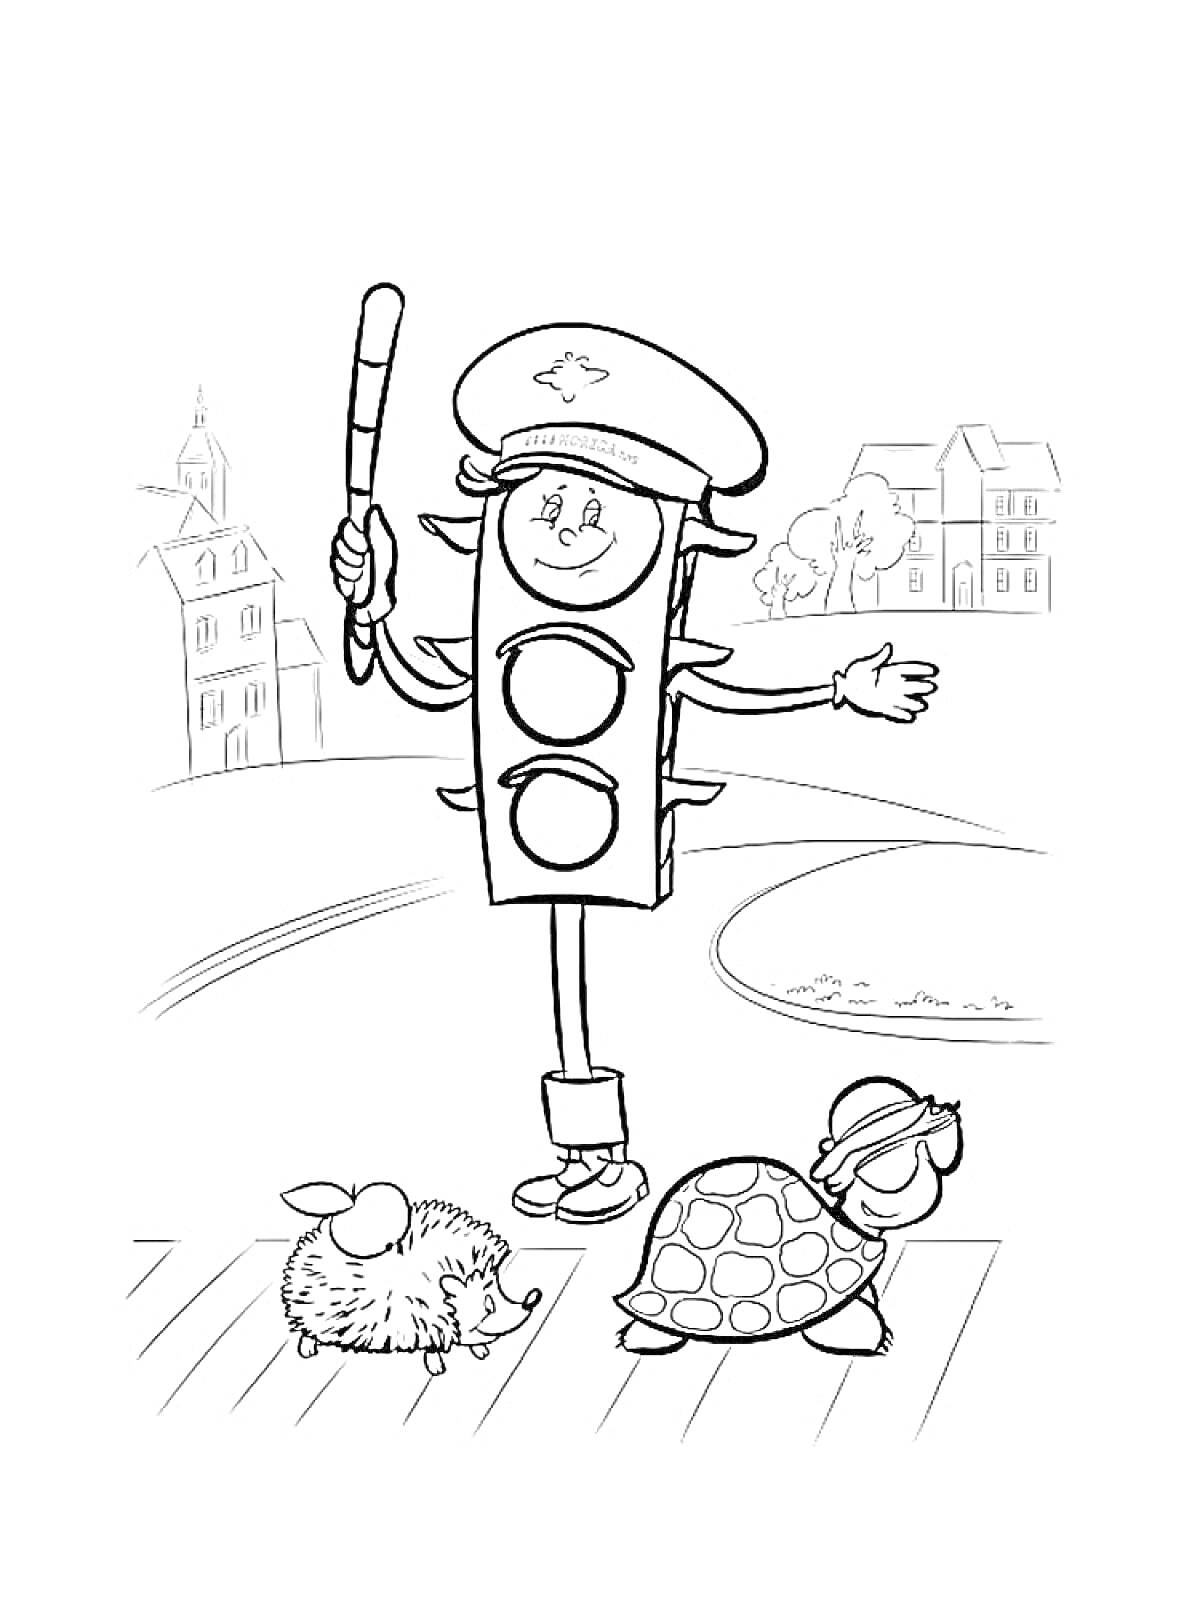 Светофор с жезлом, переходящие дорогу еж и черепаха, дома на заднем плане